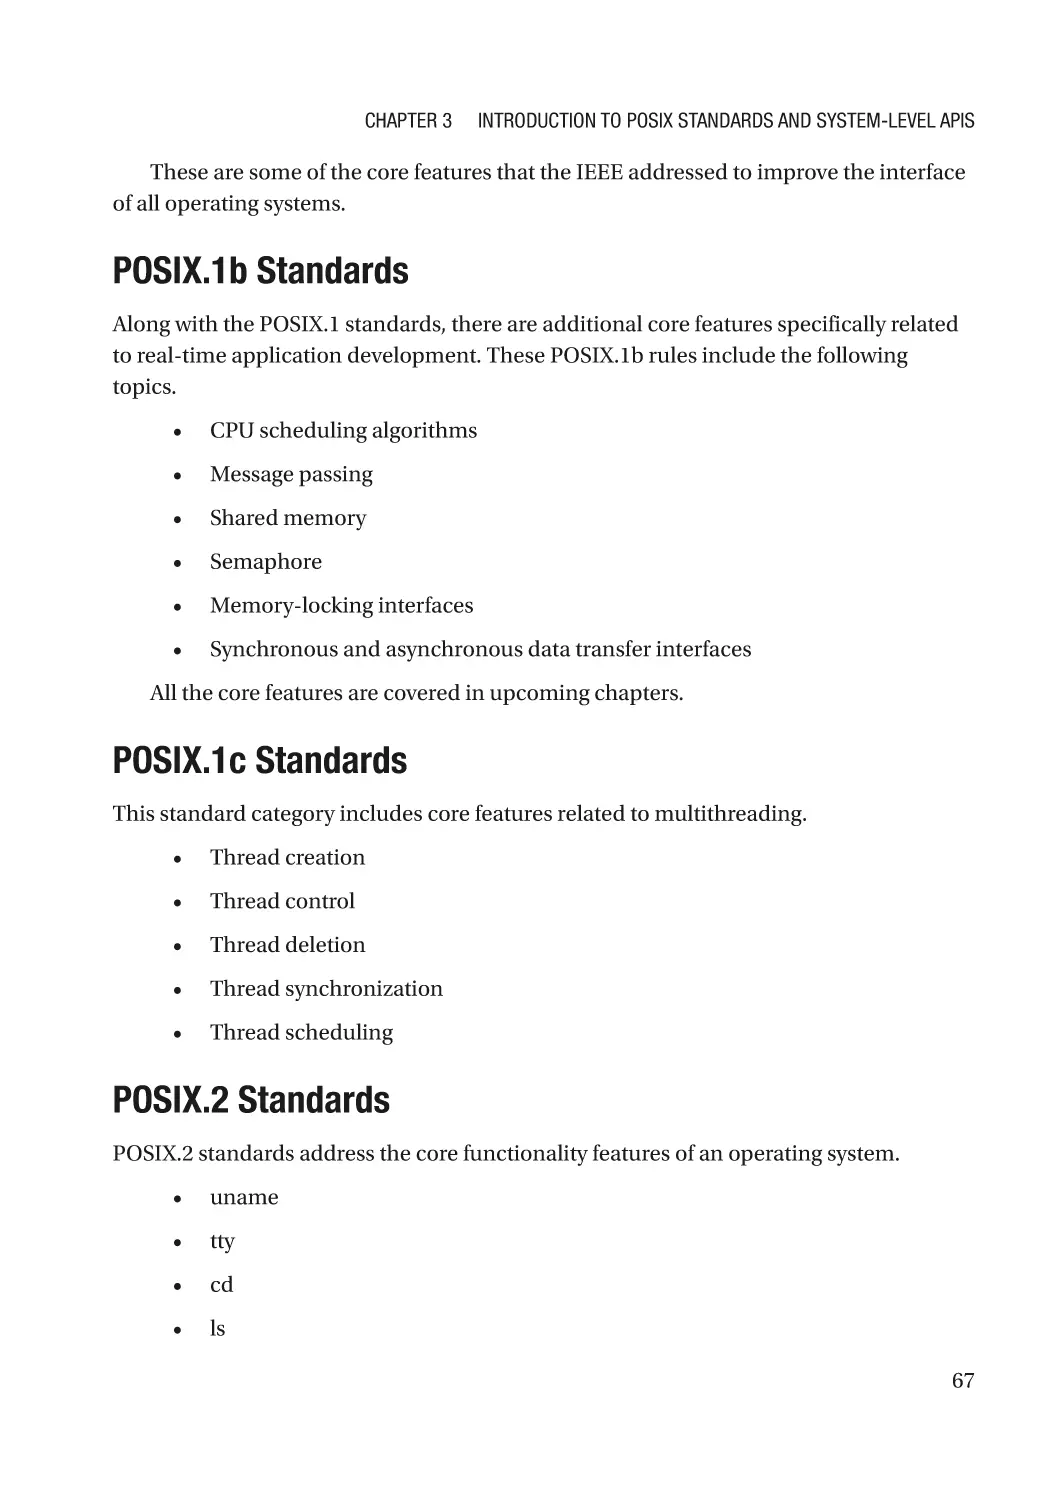 POSIX.1b Standards
POSIX.1c Standards
POSIX.2 Standards